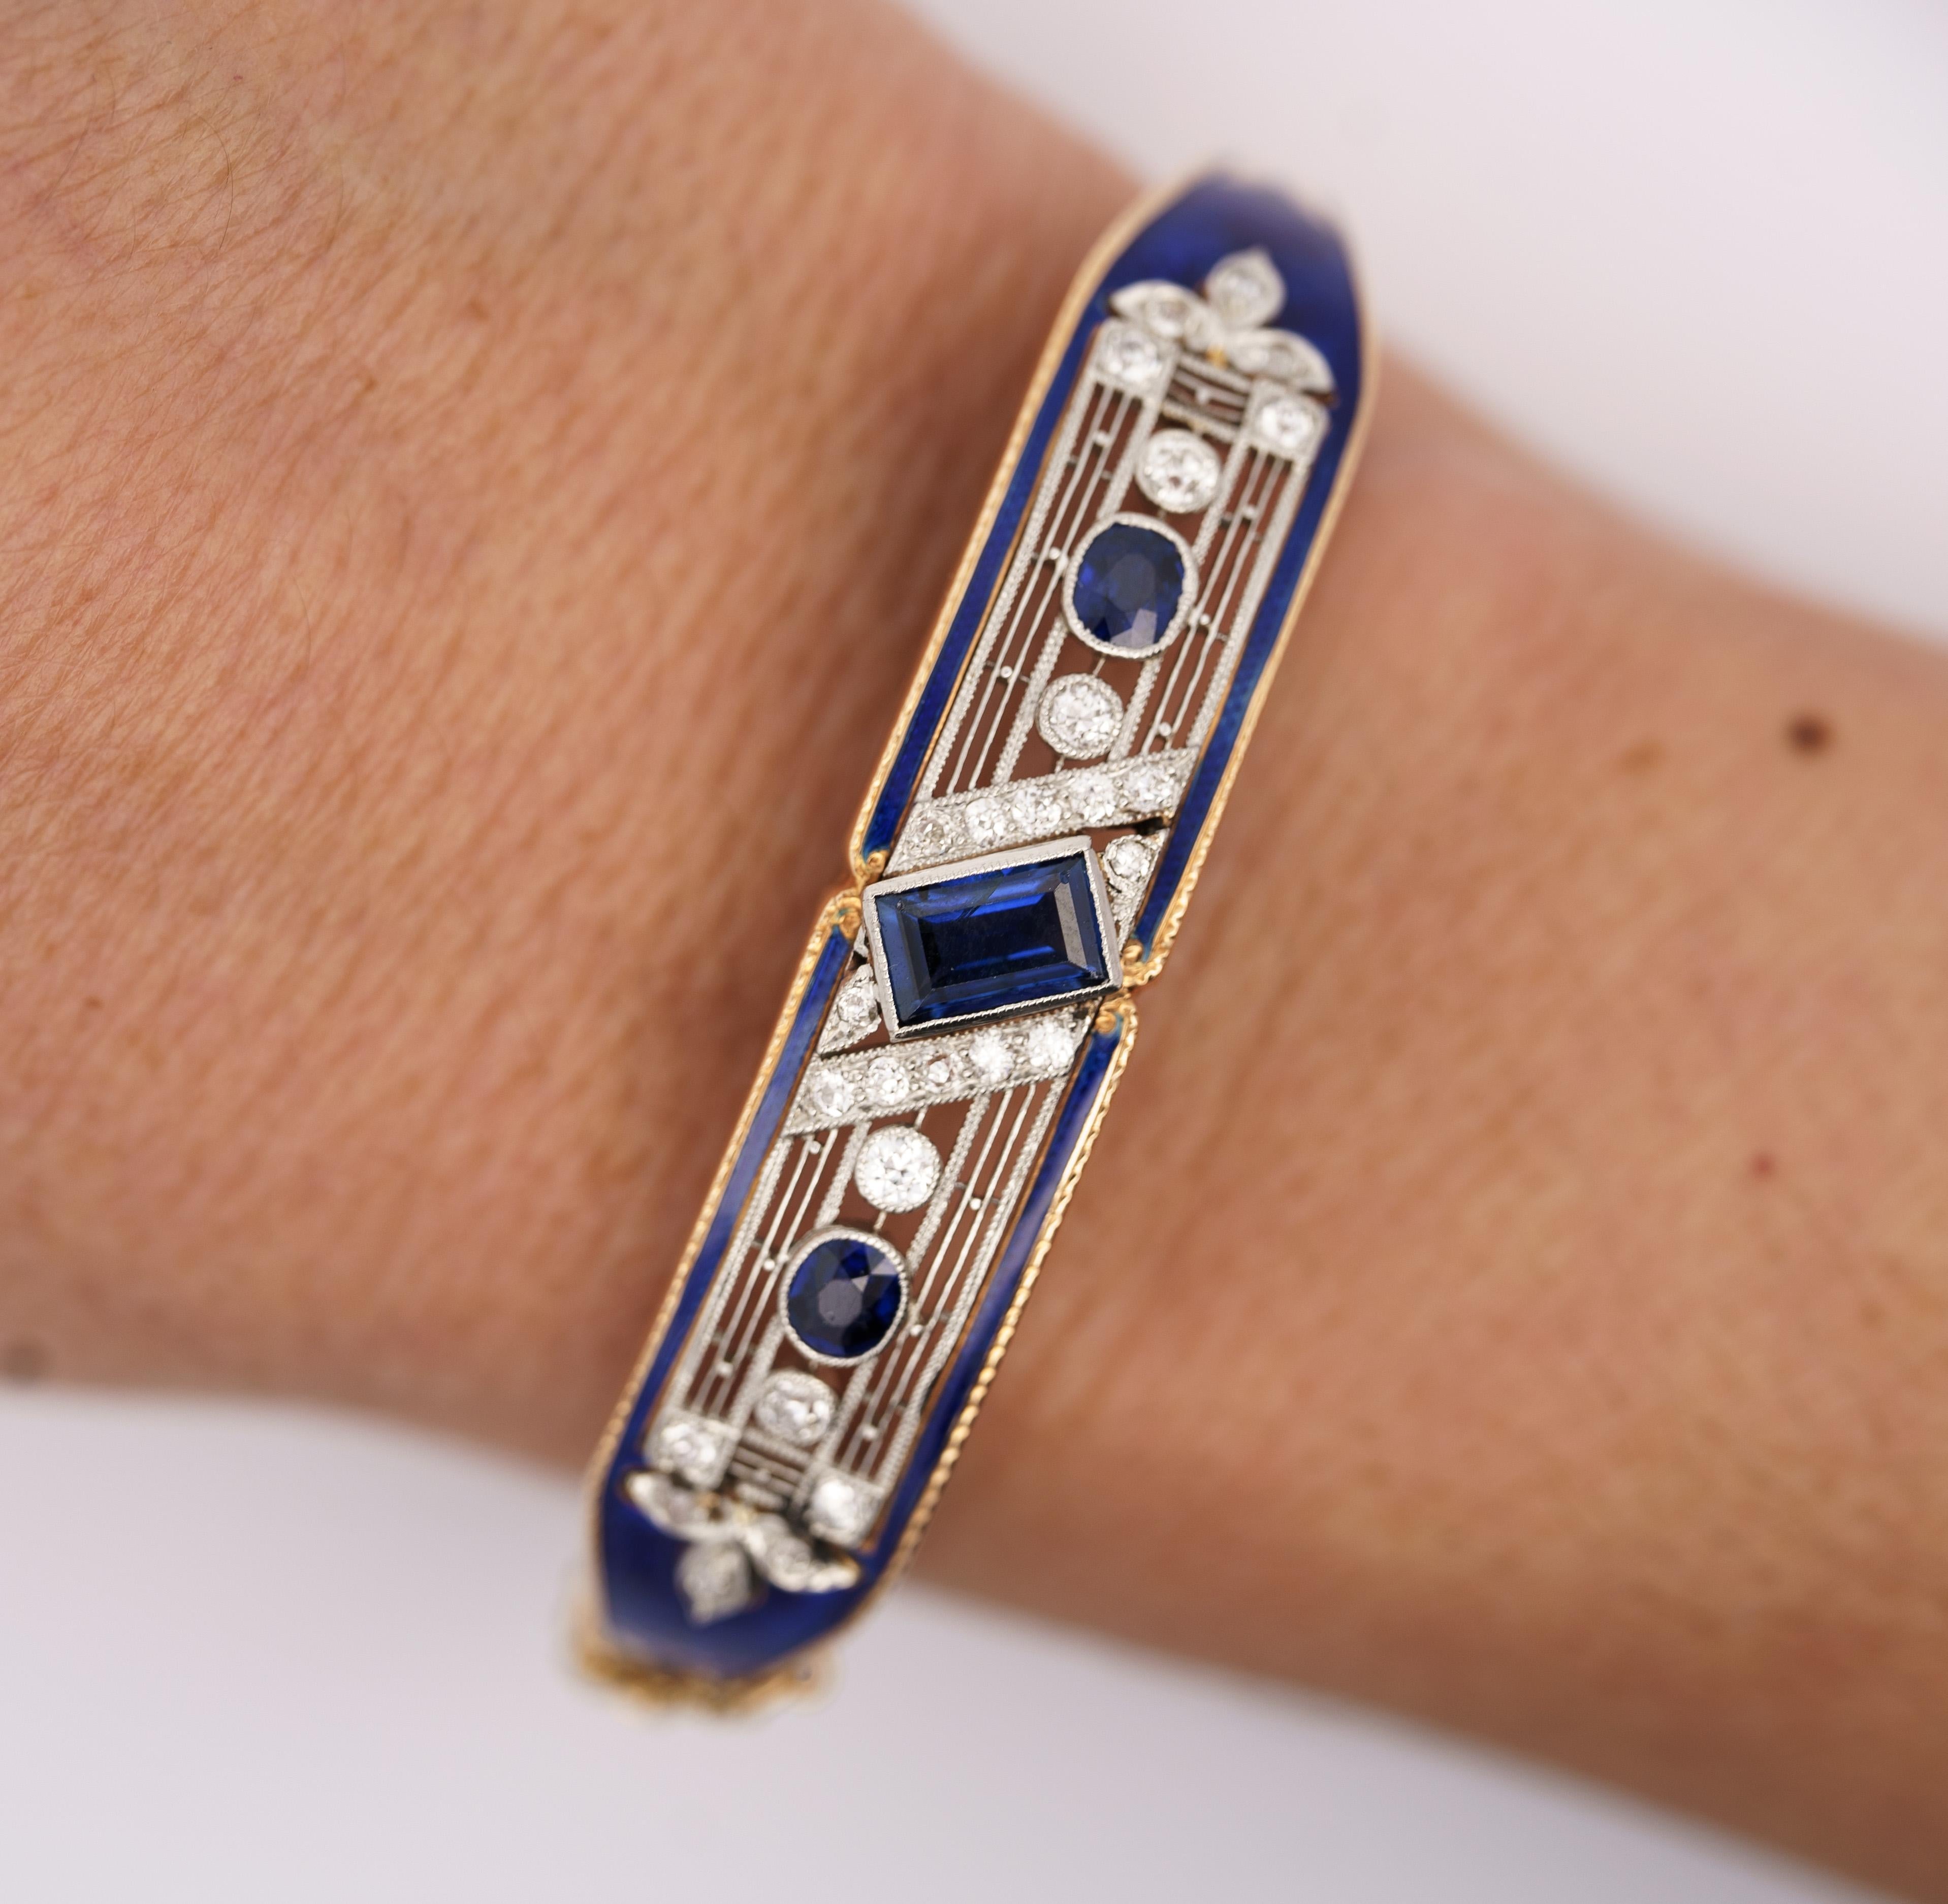 Vintage Art Deco EGL zertifiziert 2,08 Karat insgesamt natürlichen blauen Saphir, Diamant, und blaue Emaille Armreif Armband. 

Der Mittelstein dieses Armreifs besteht aus einem natürlichen blauen Saphir von 1,15 Karat. Der Saphir ist ein Smaragd im